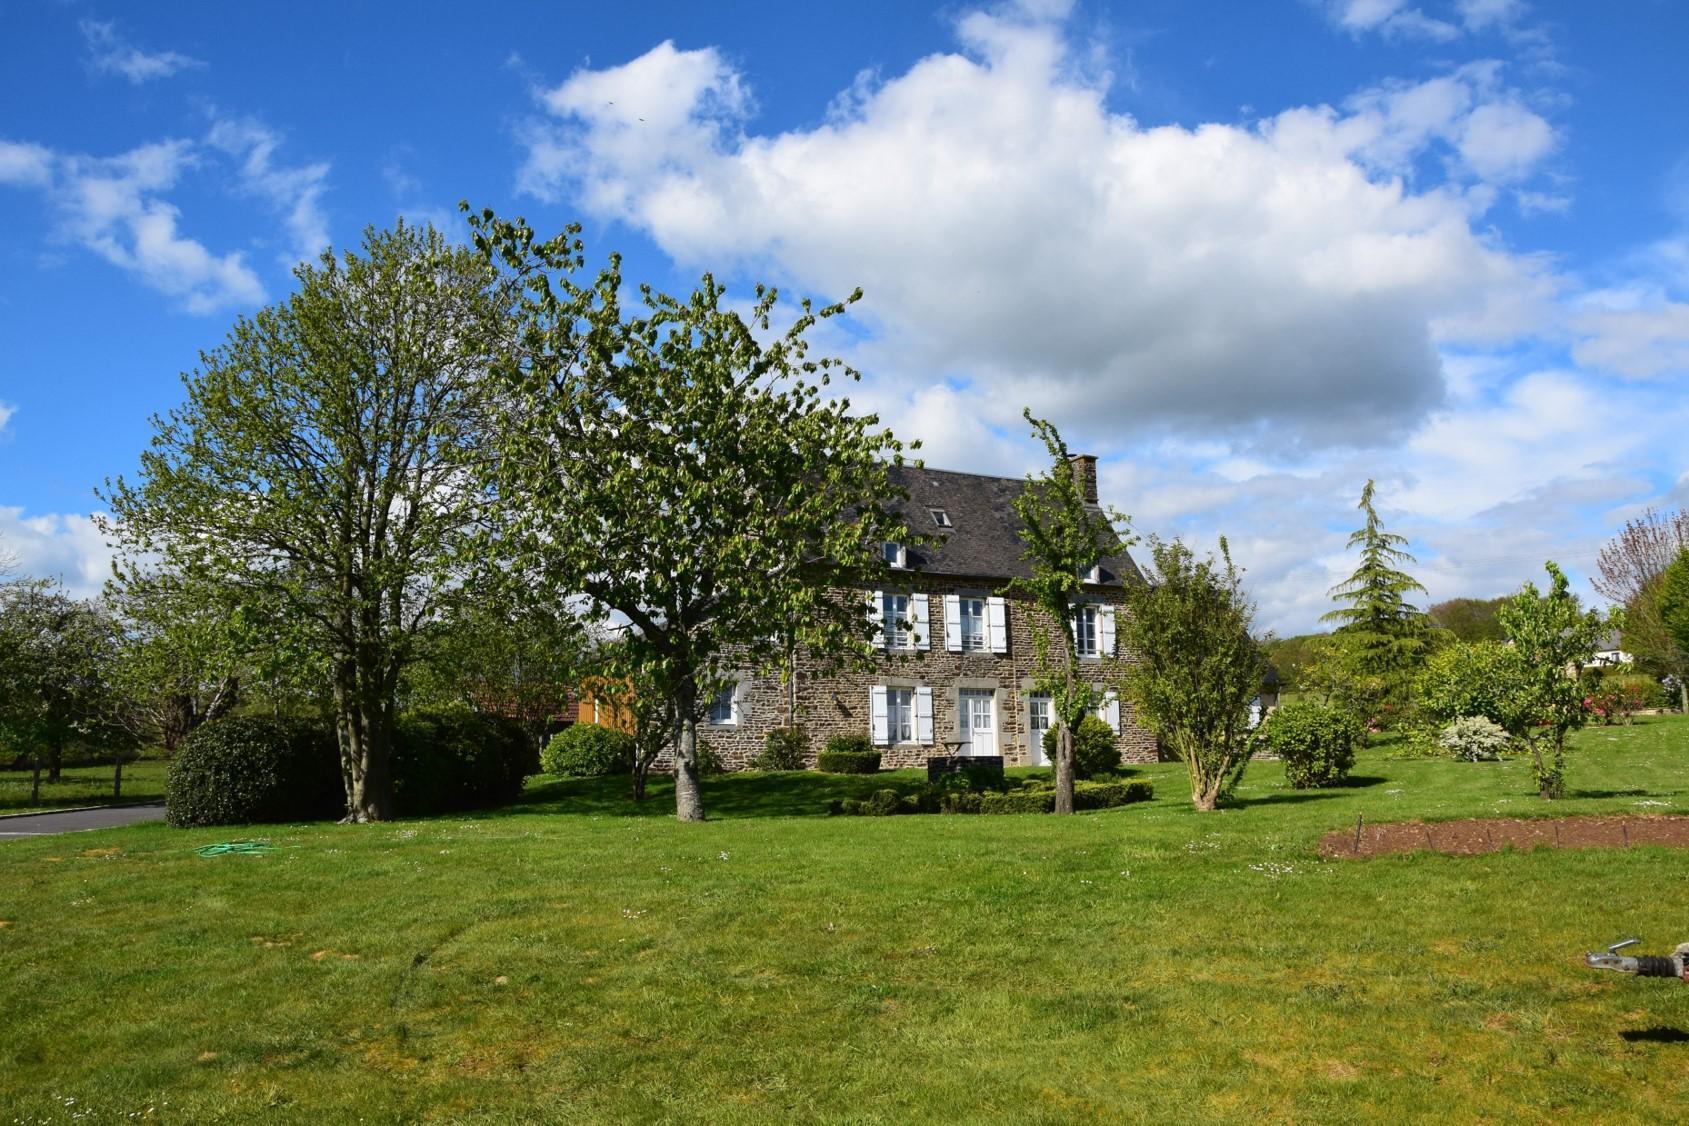 Location de vacances Gite charme Normandie maison et jardin